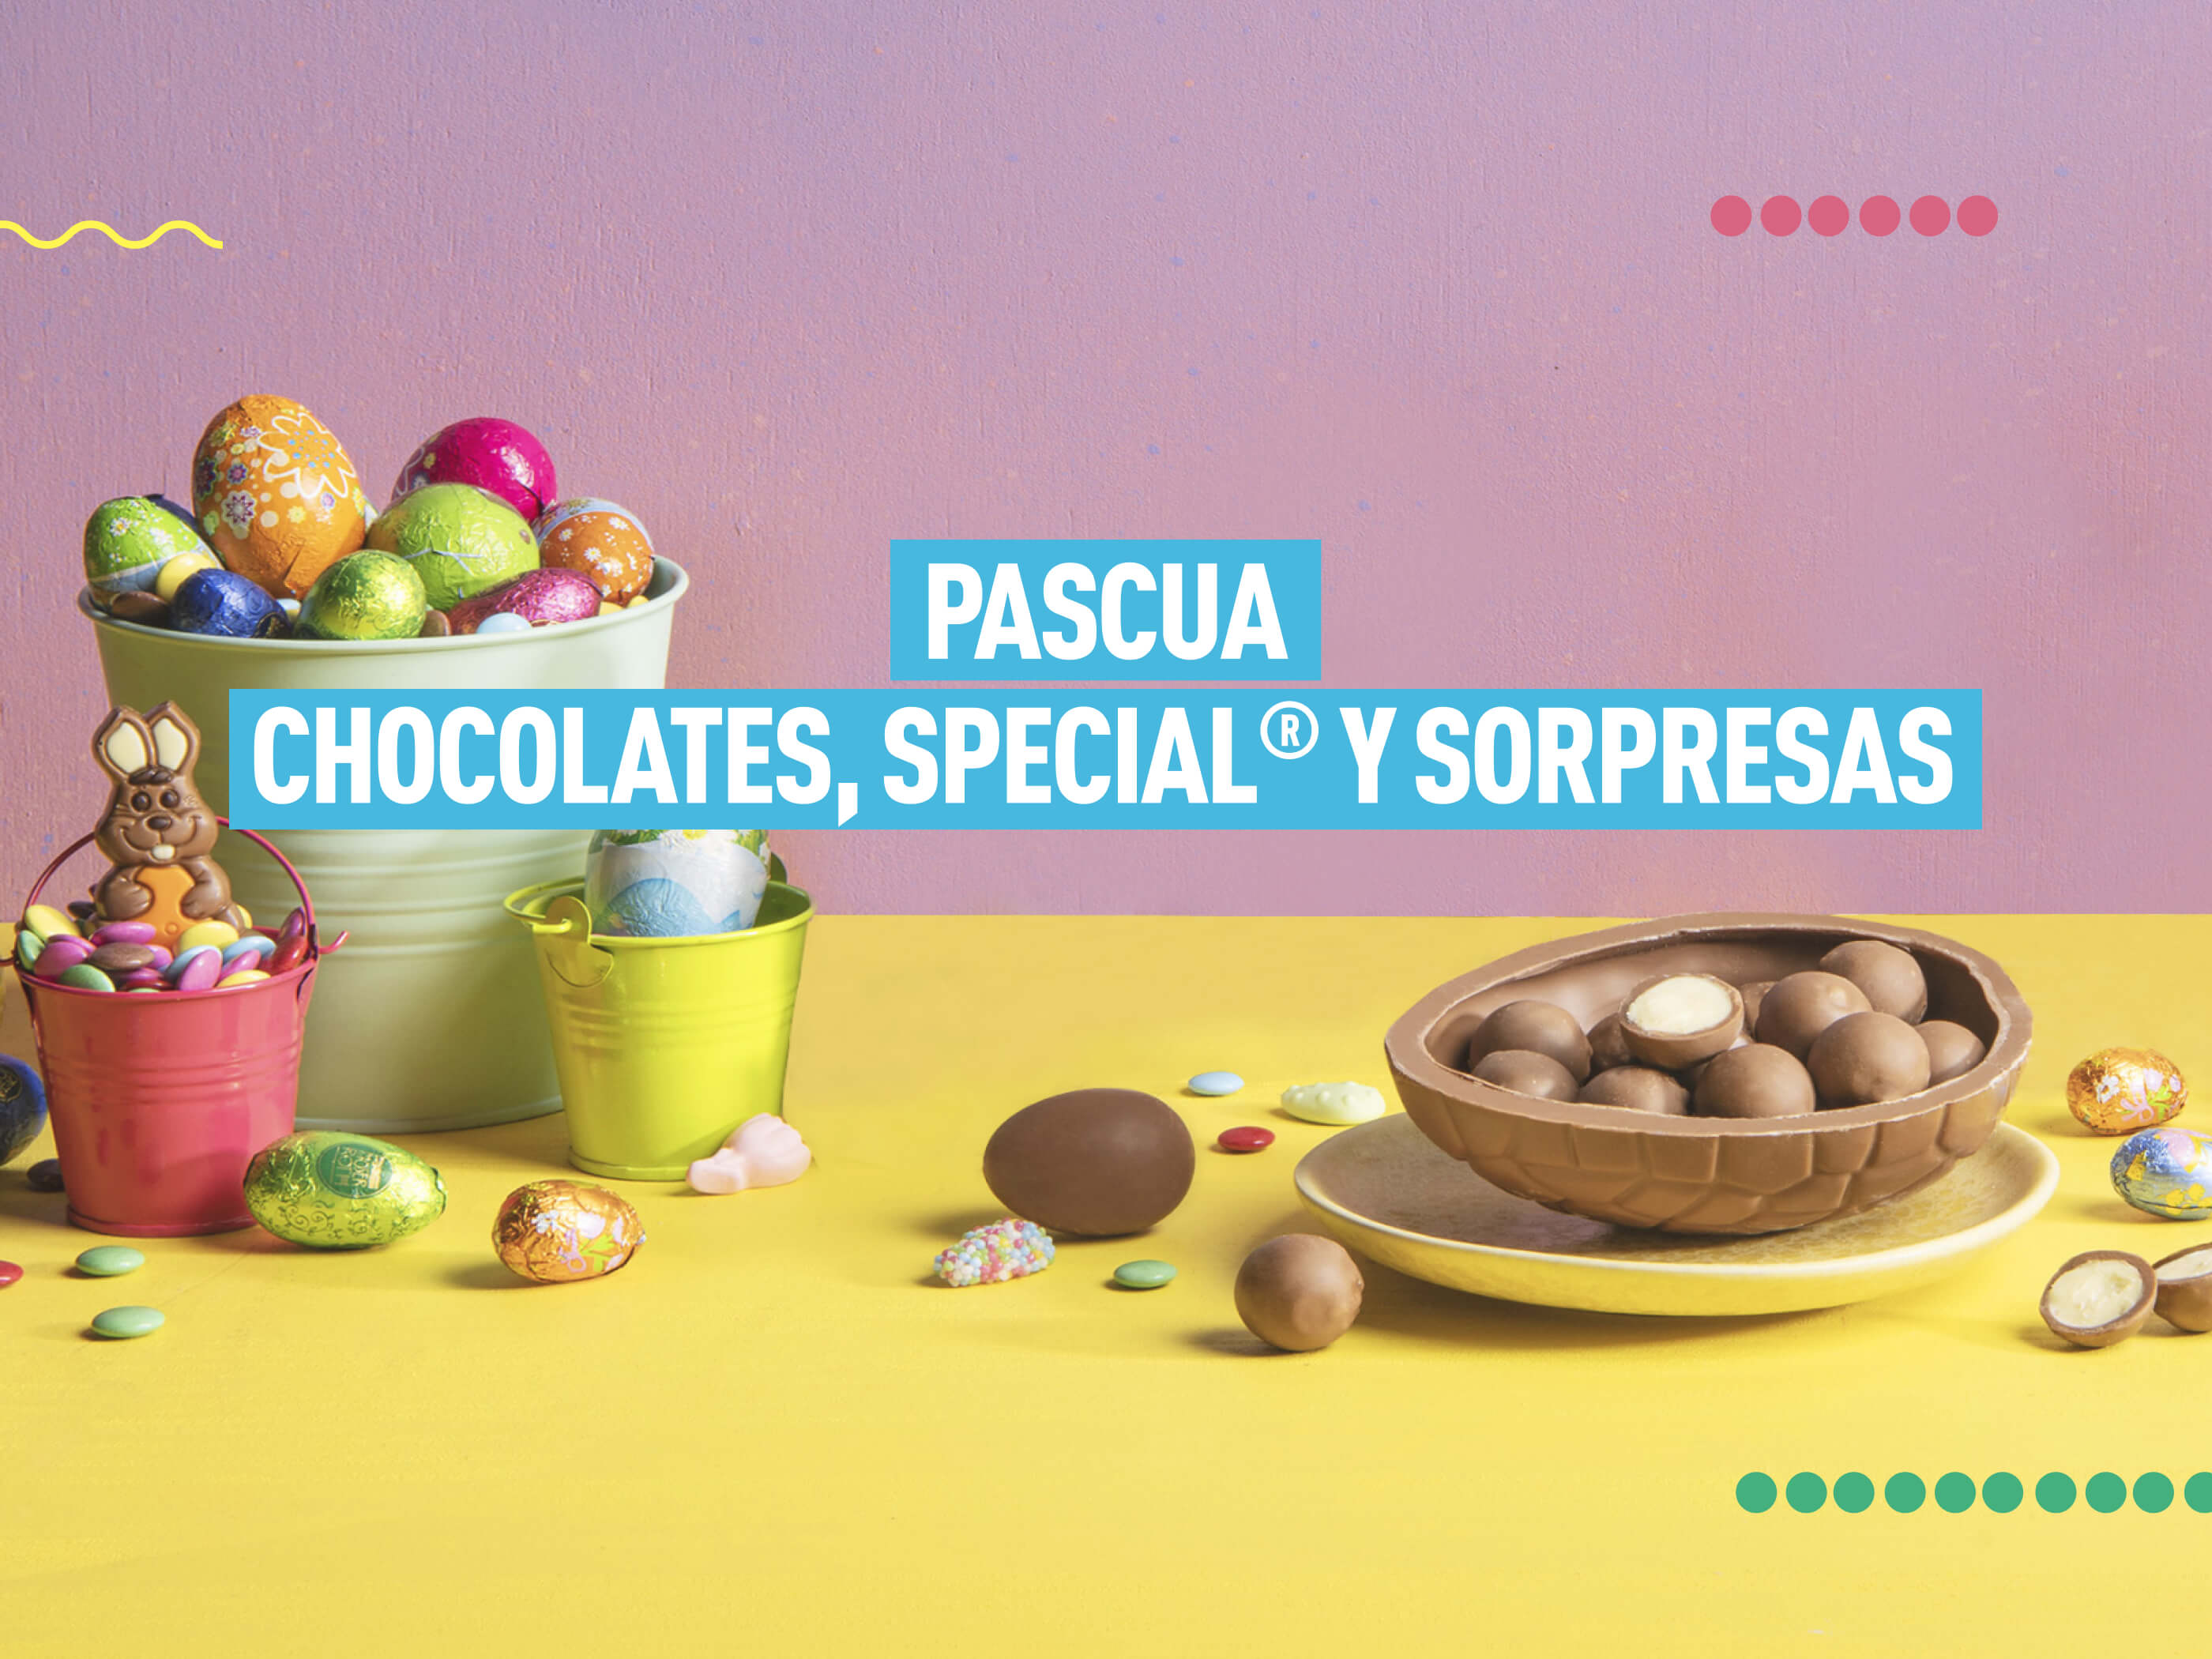 Pascua, chocolates, Special® y Sorpresas